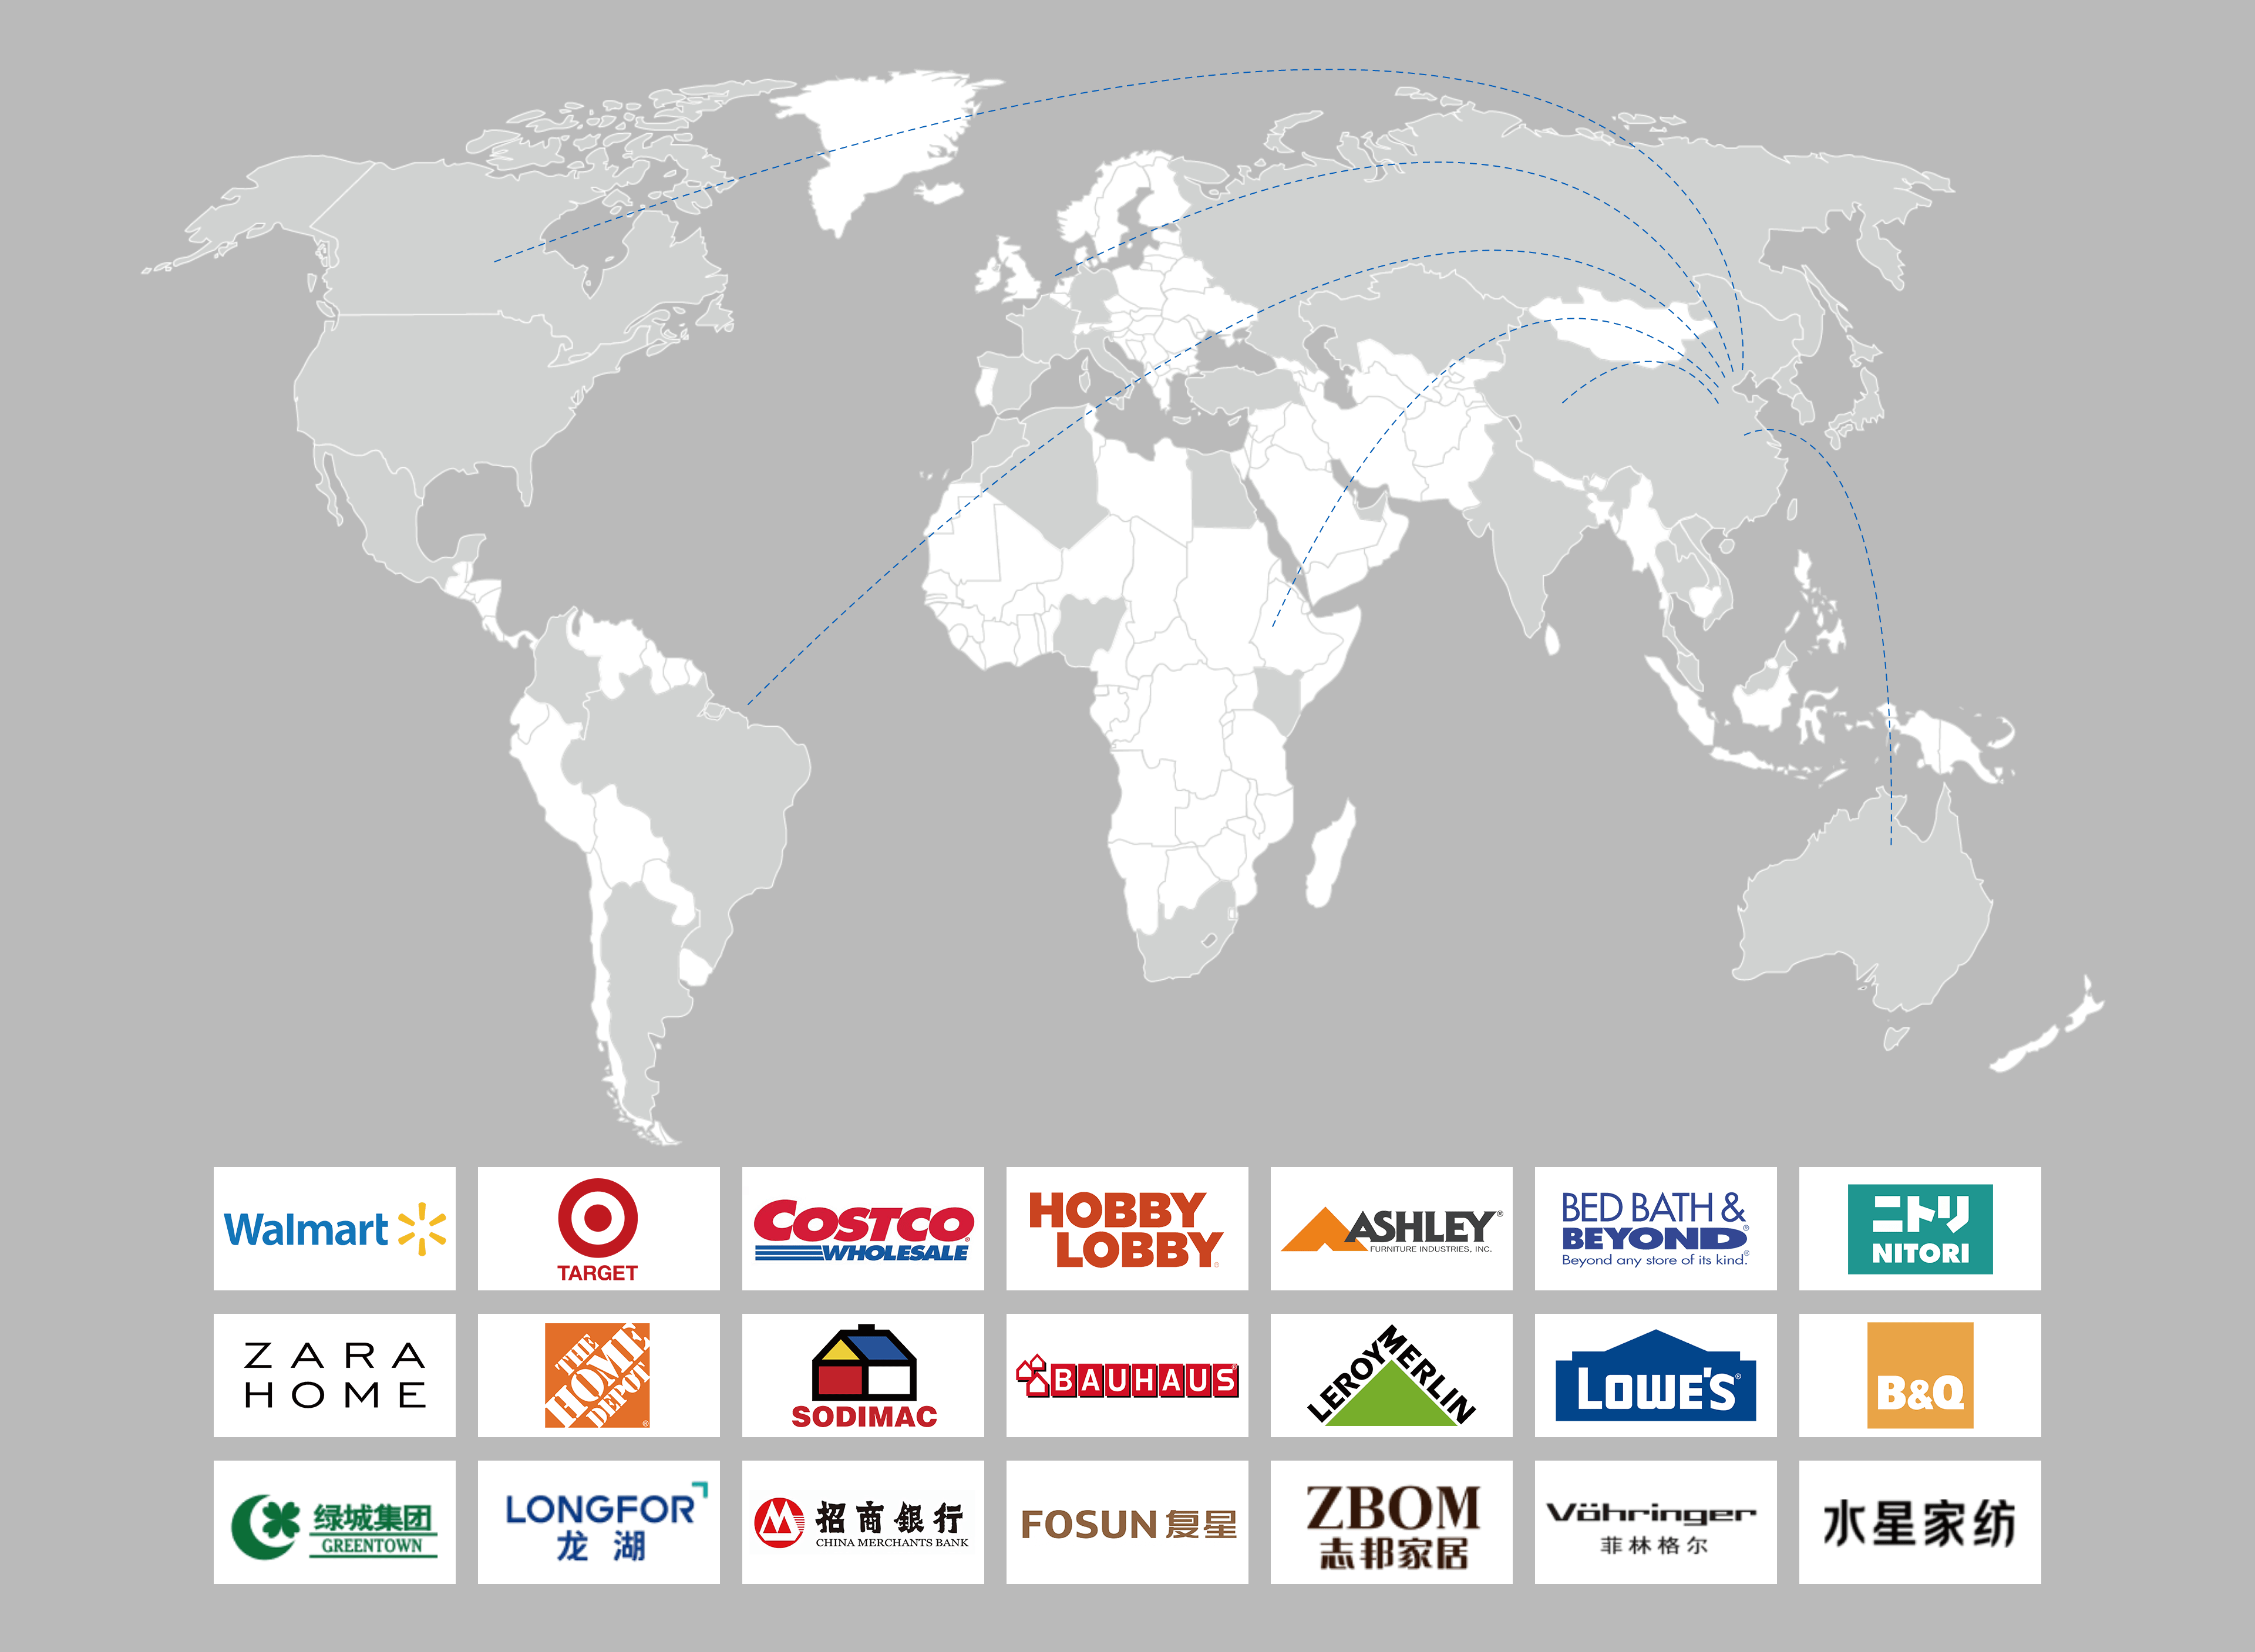 英科产品远销海内外120多个国家和地区。